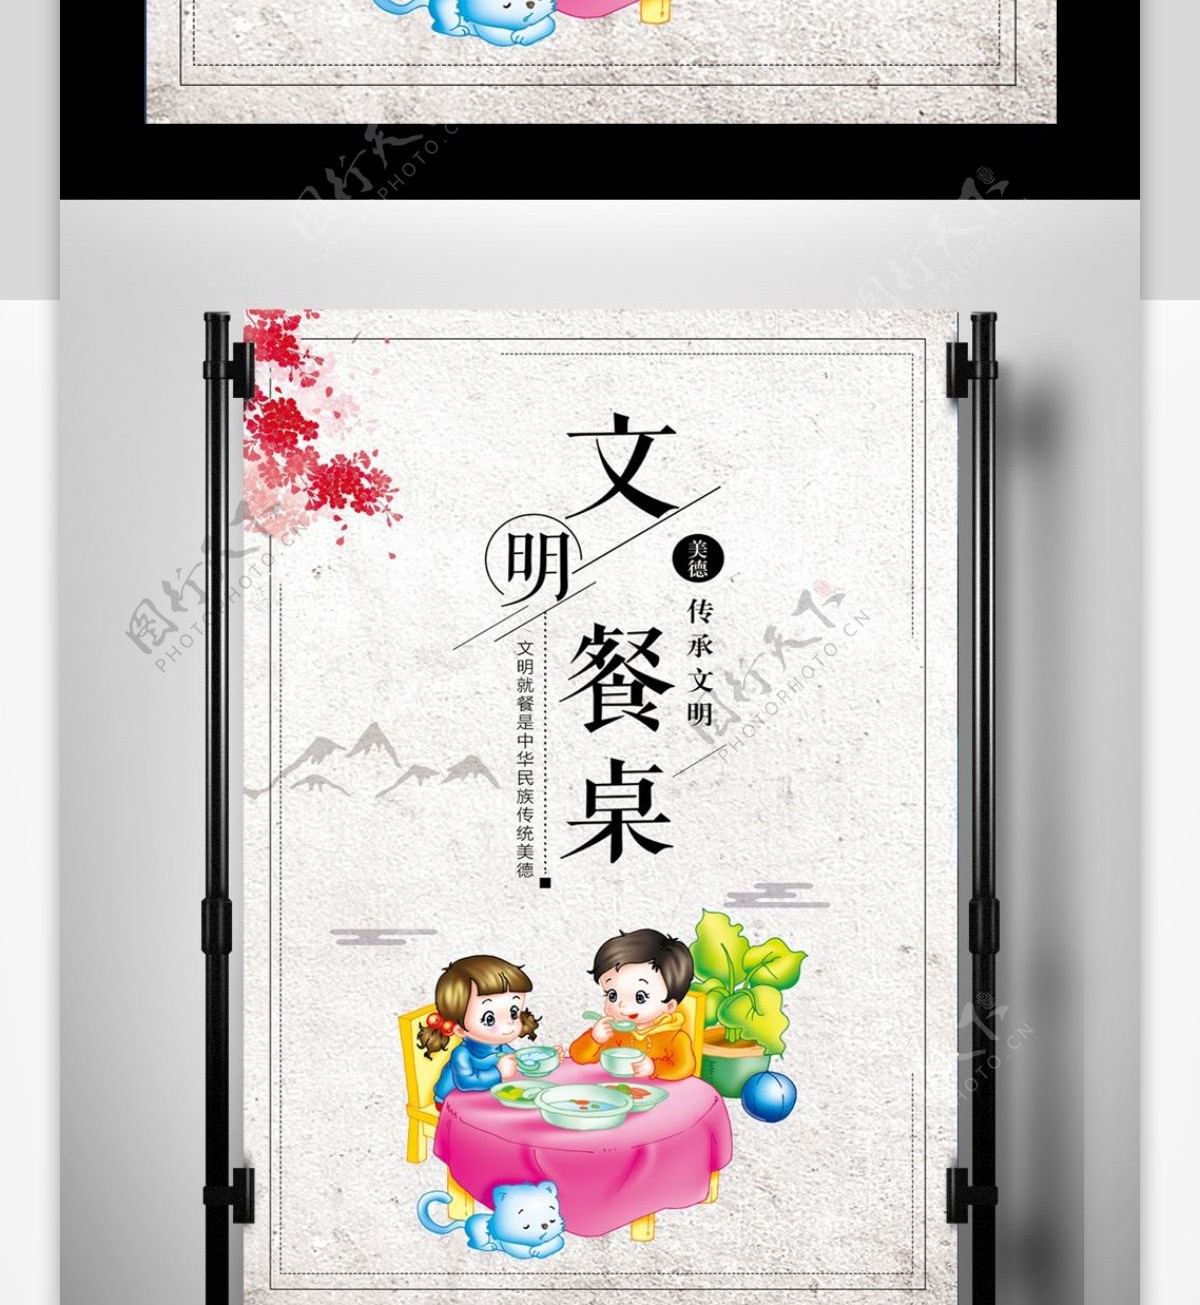 2017年中国风文明餐桌公益广告